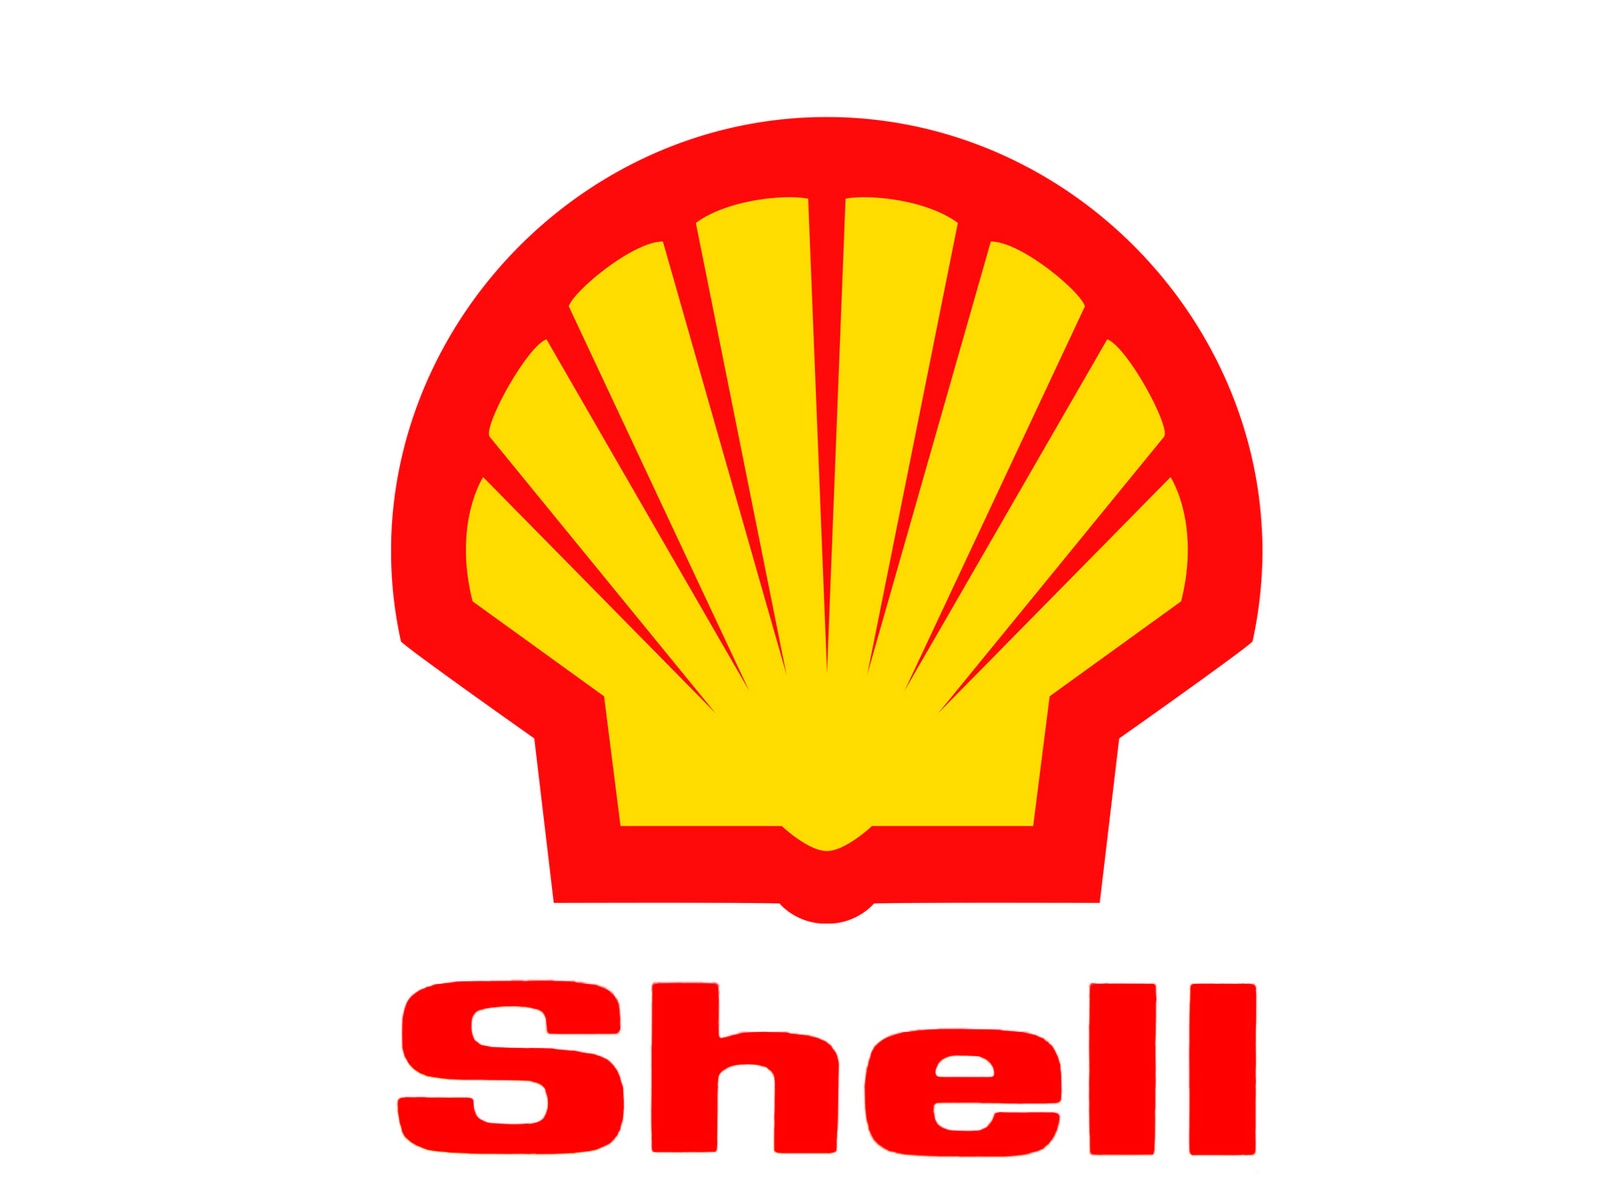 Shell ya ocupa el segundo puesto de las petroleras internacionales tras la adquisición de BG